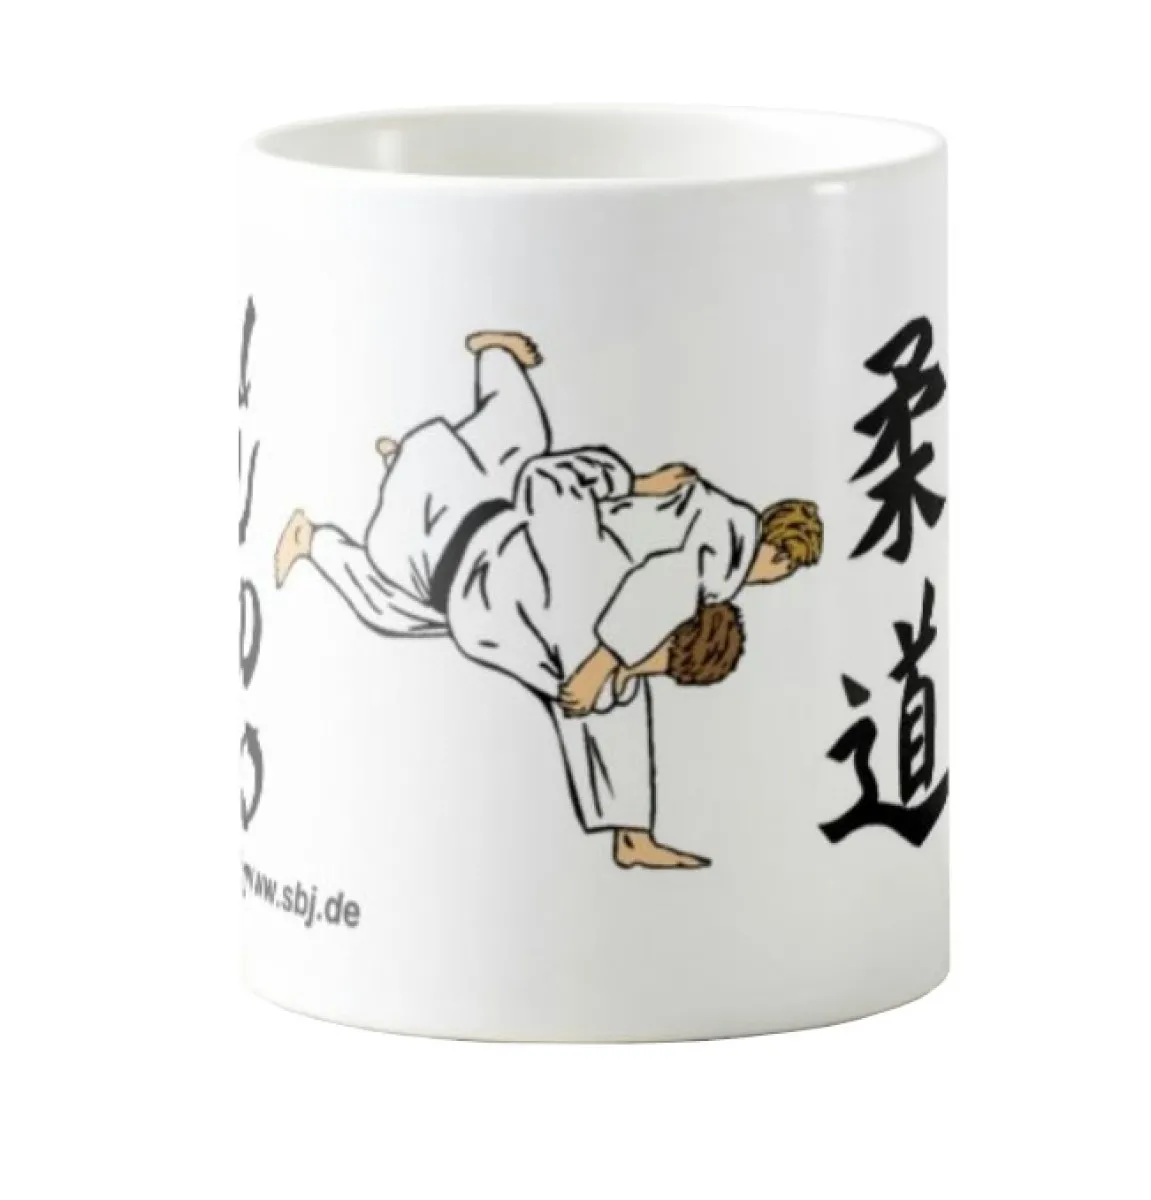 Copa de judo